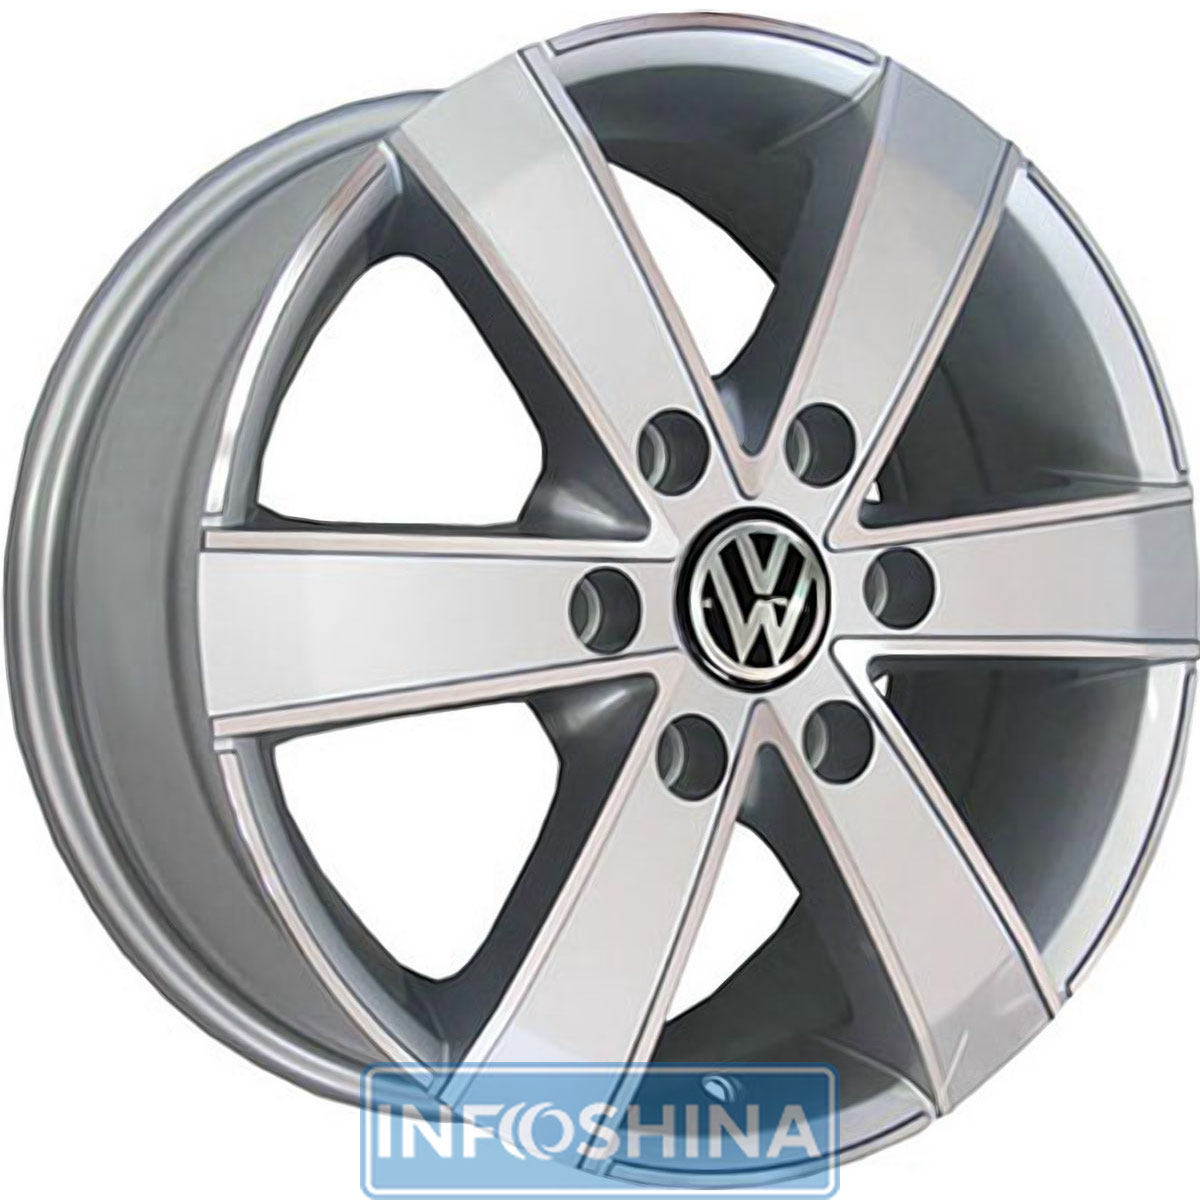 Купить диски Replica Volkswagen BK474 S R16 W7 PCD6x130 ET60 DIA84.1